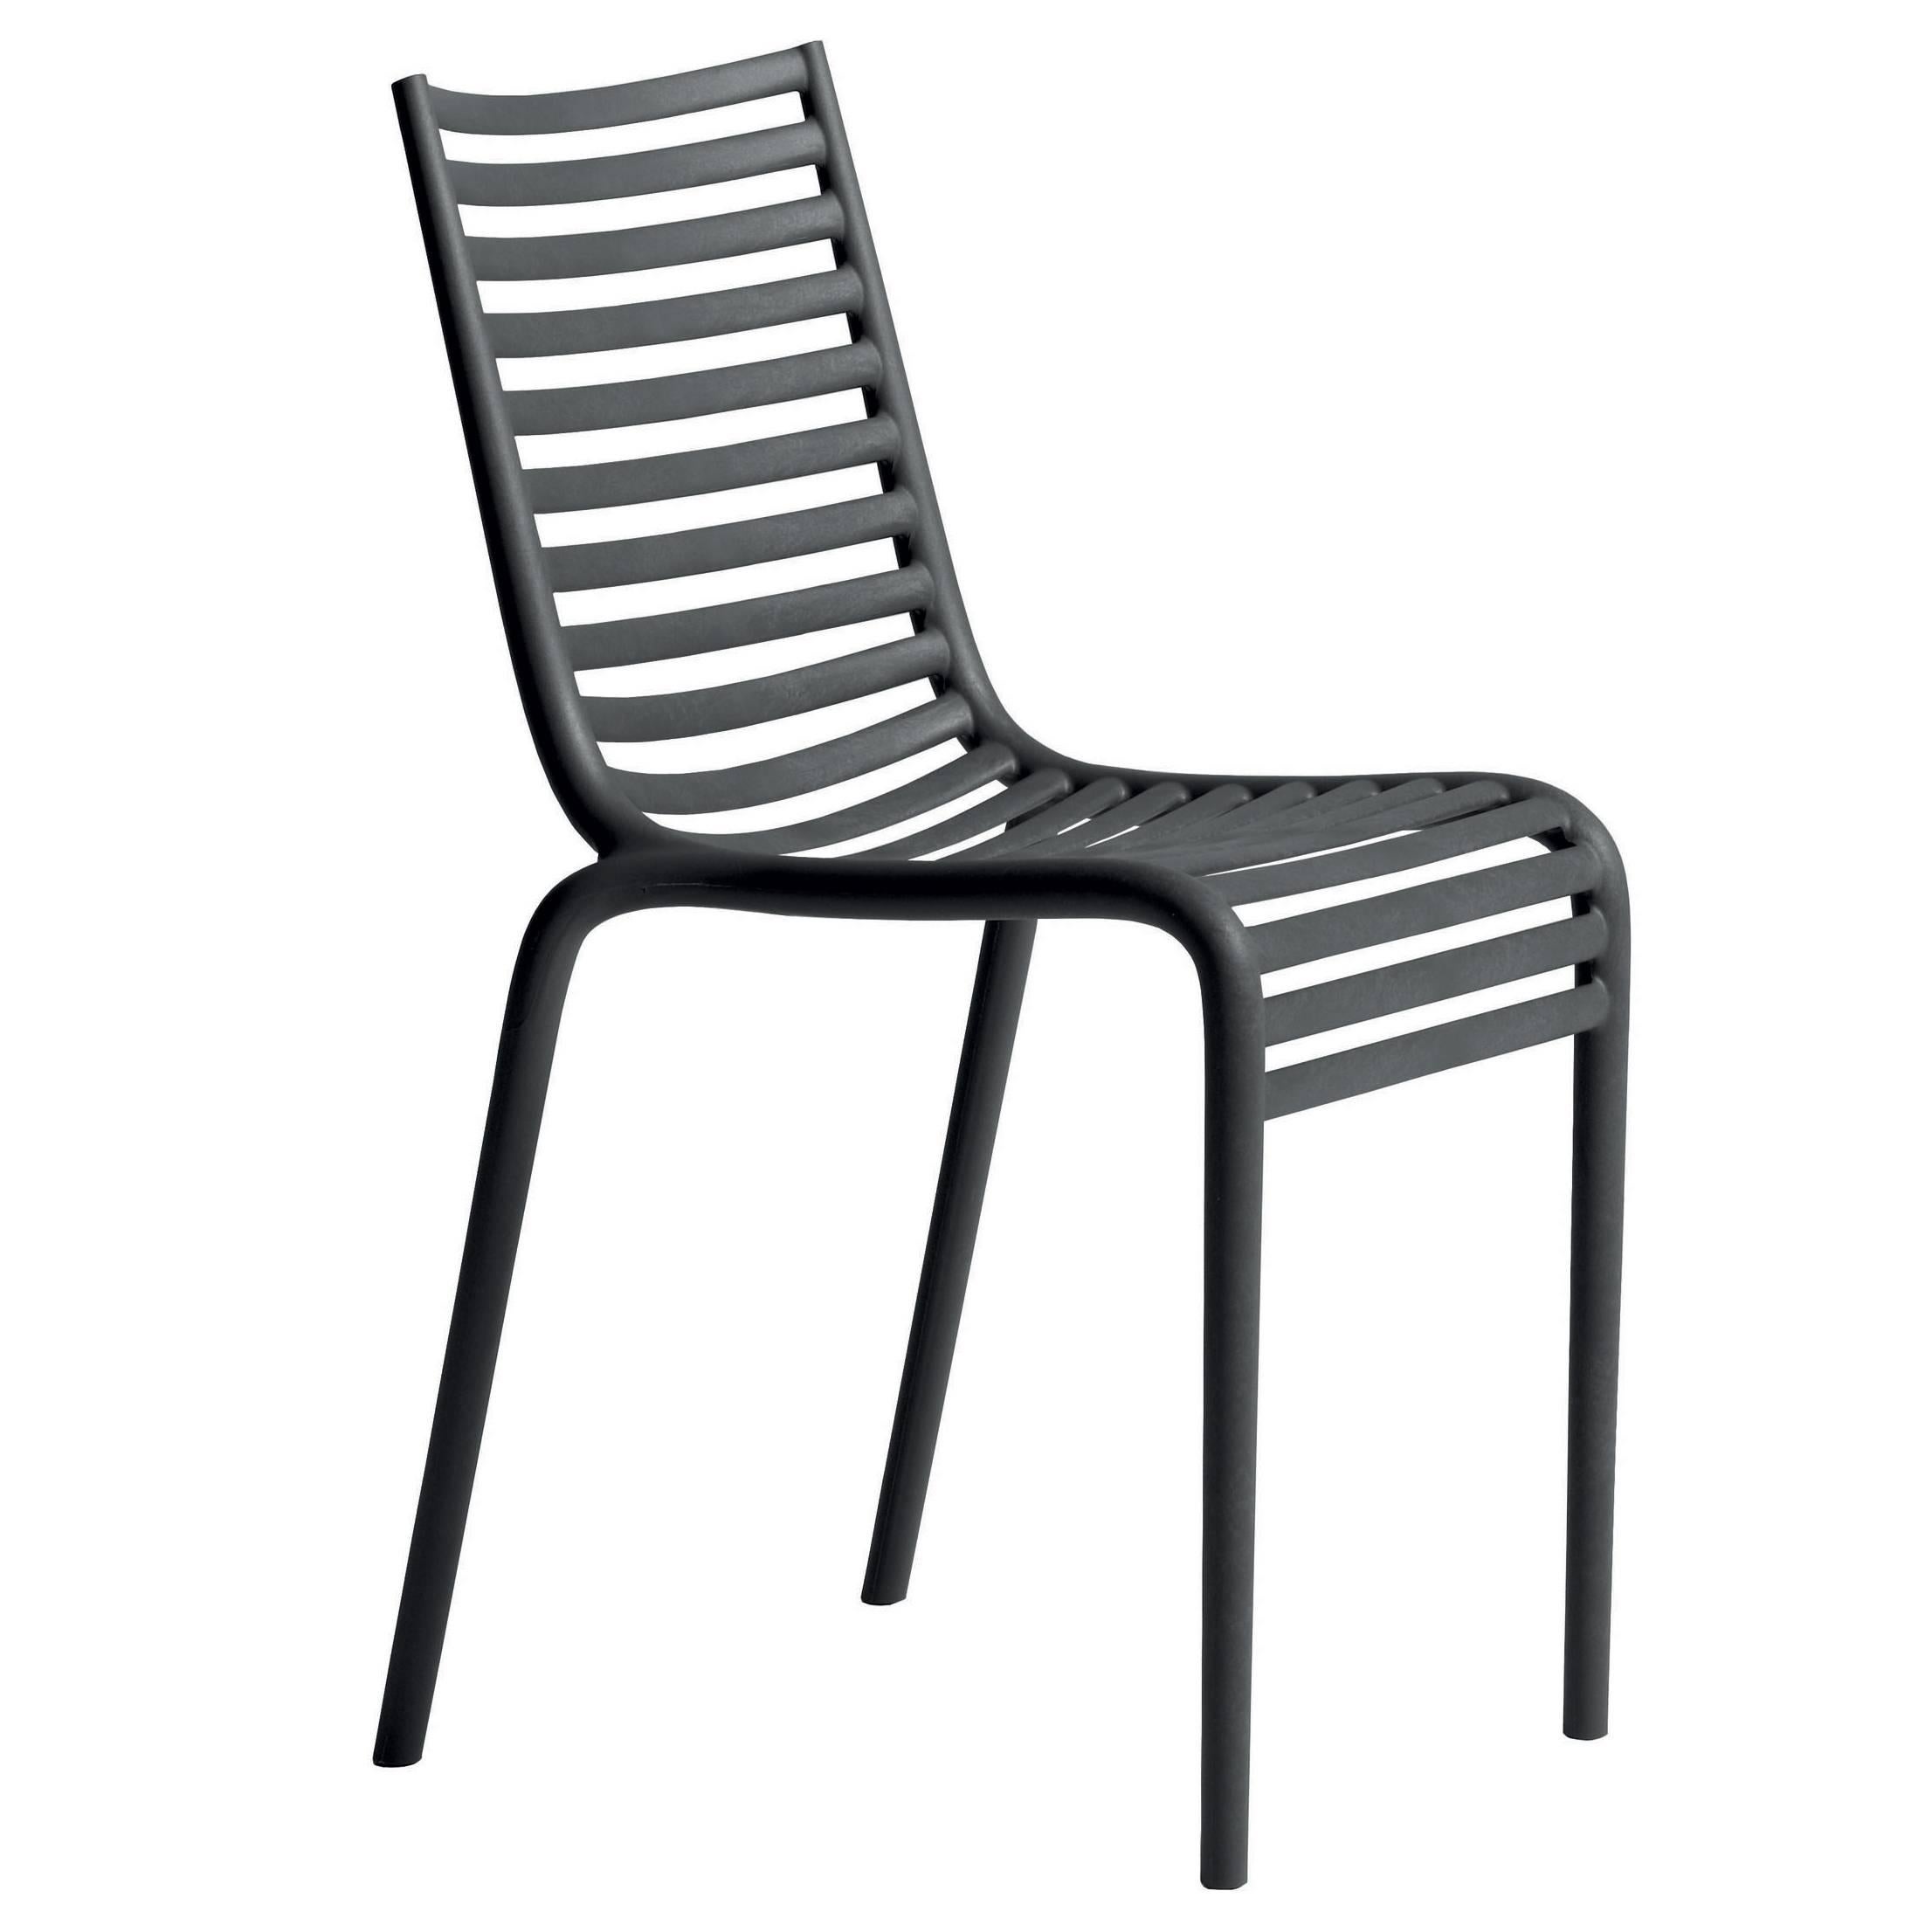 Chaise d'extérieur empilable « PIP-e » conçue par Philippe Starck pour Driade